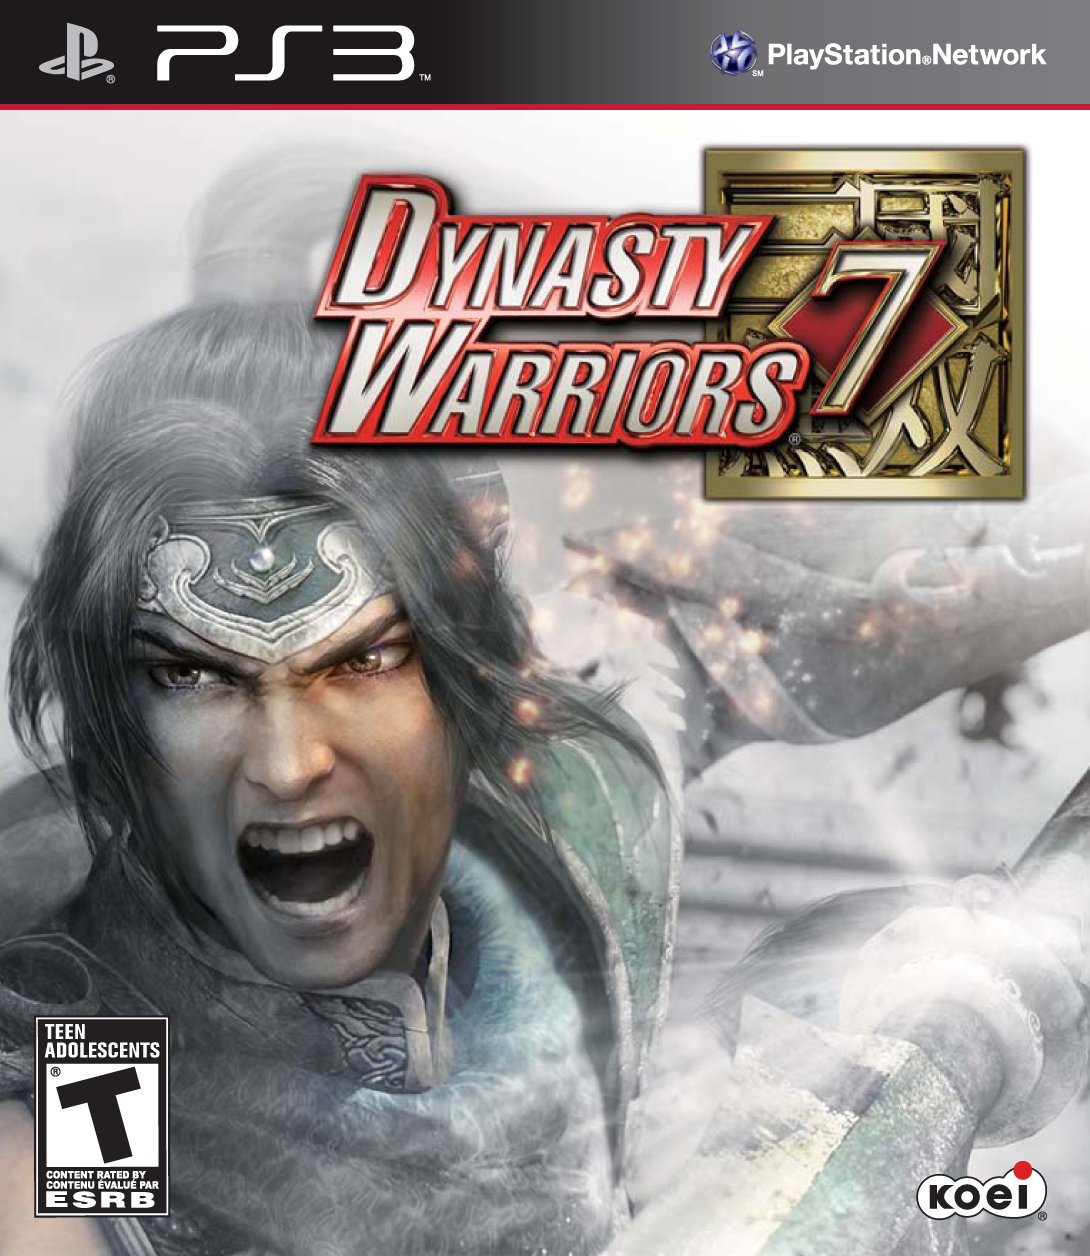 Dynasty Warriors 7 - Playstation 3